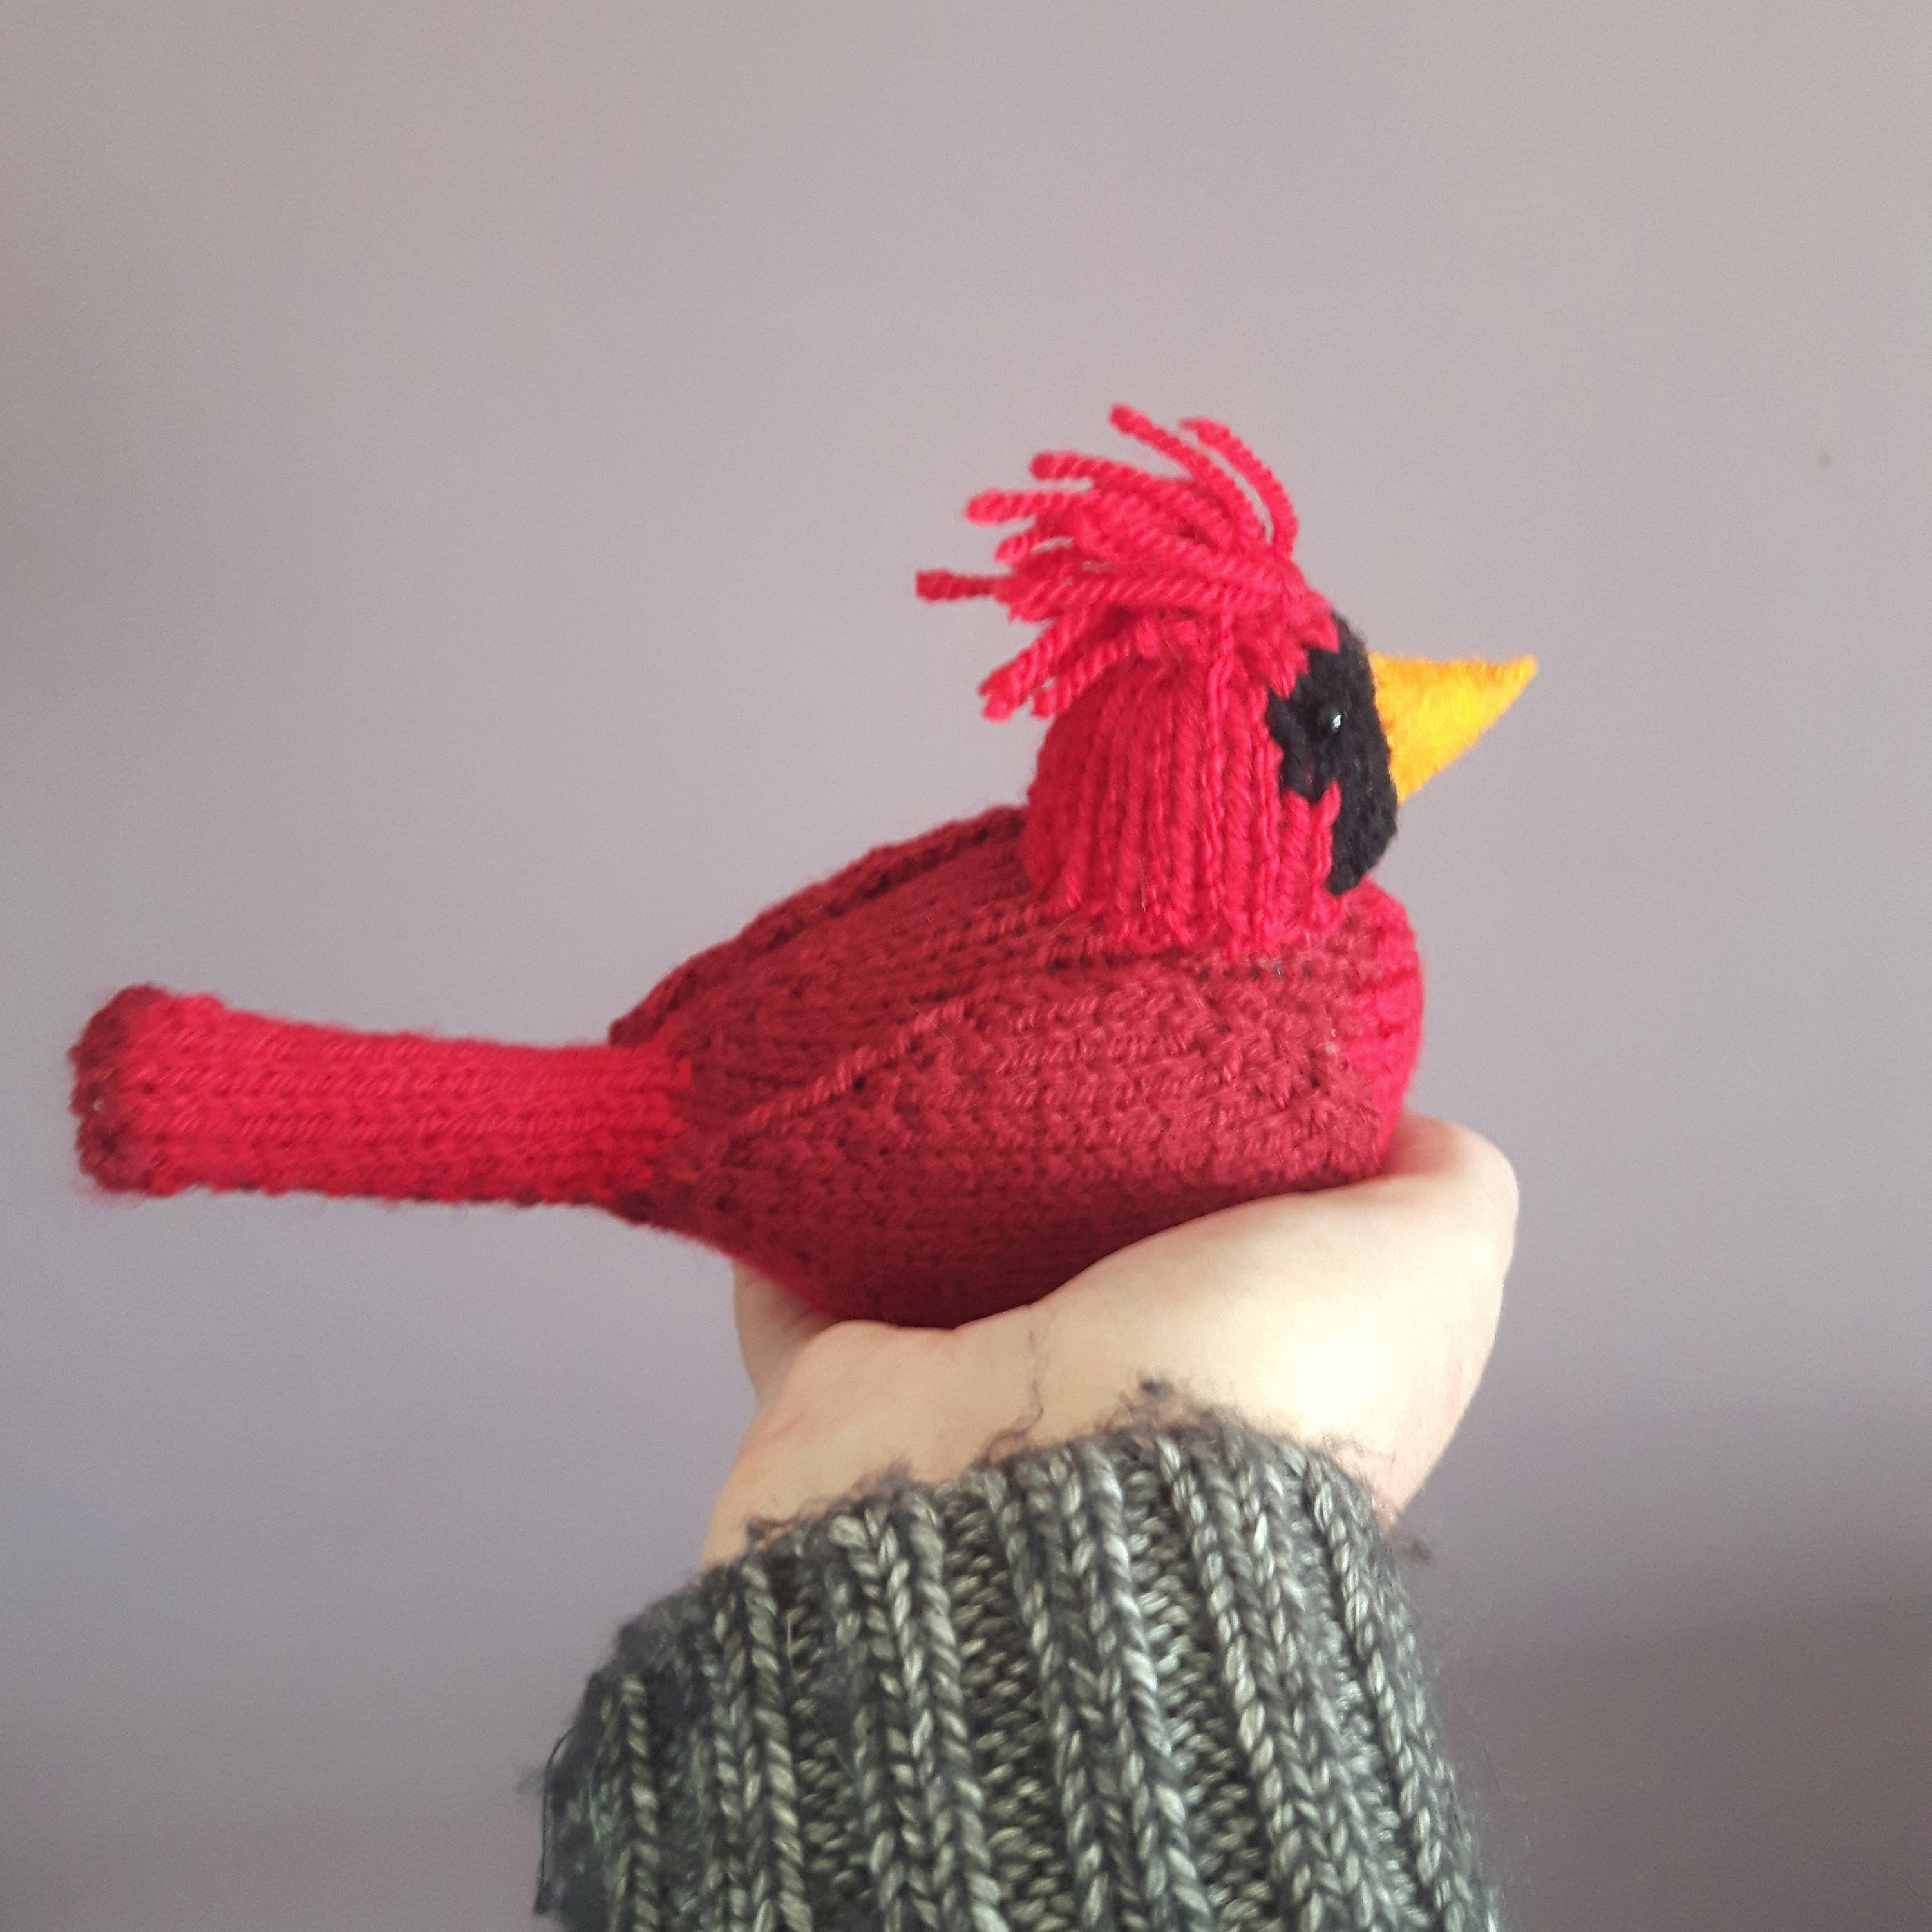 Knitted Bird Pattern Northern Cardinal Knitting Pattern Red Bird Knitting Pattern For A Cardinal Bird